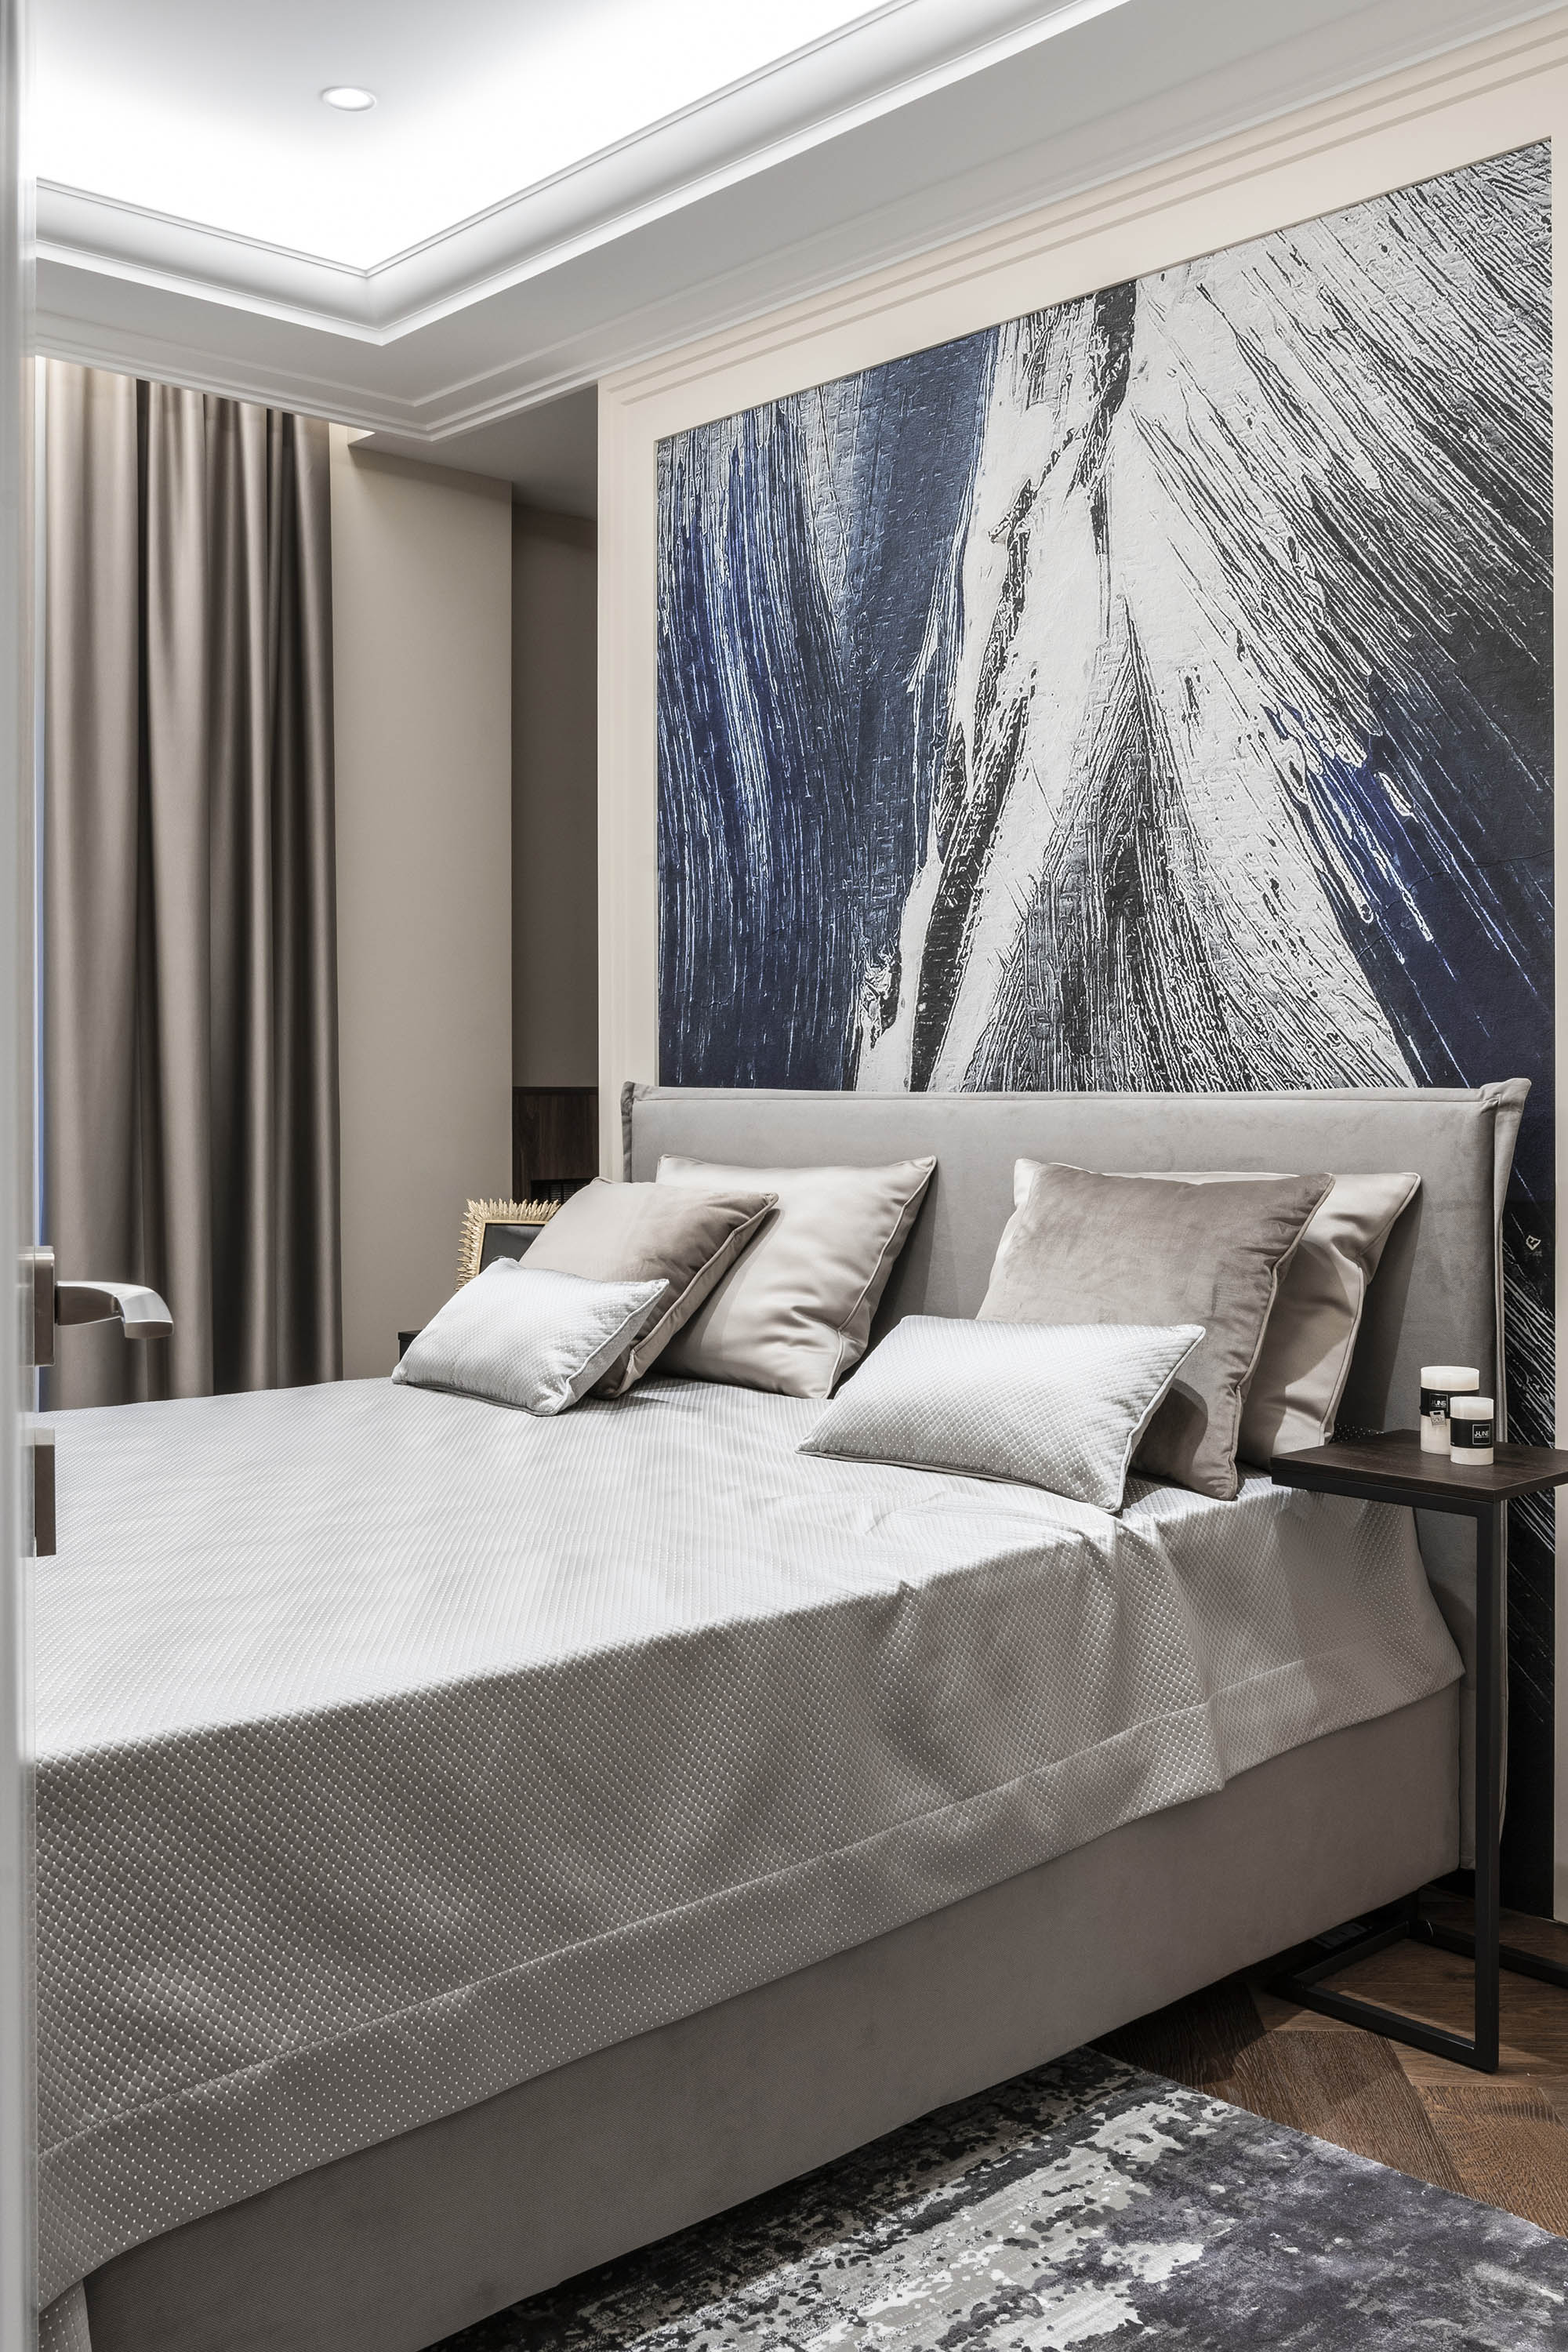 Amenajare de interior pentru dormitor in nuanțe calme și accentuate, culori gri si podea din lemn. Biroul ab and partners